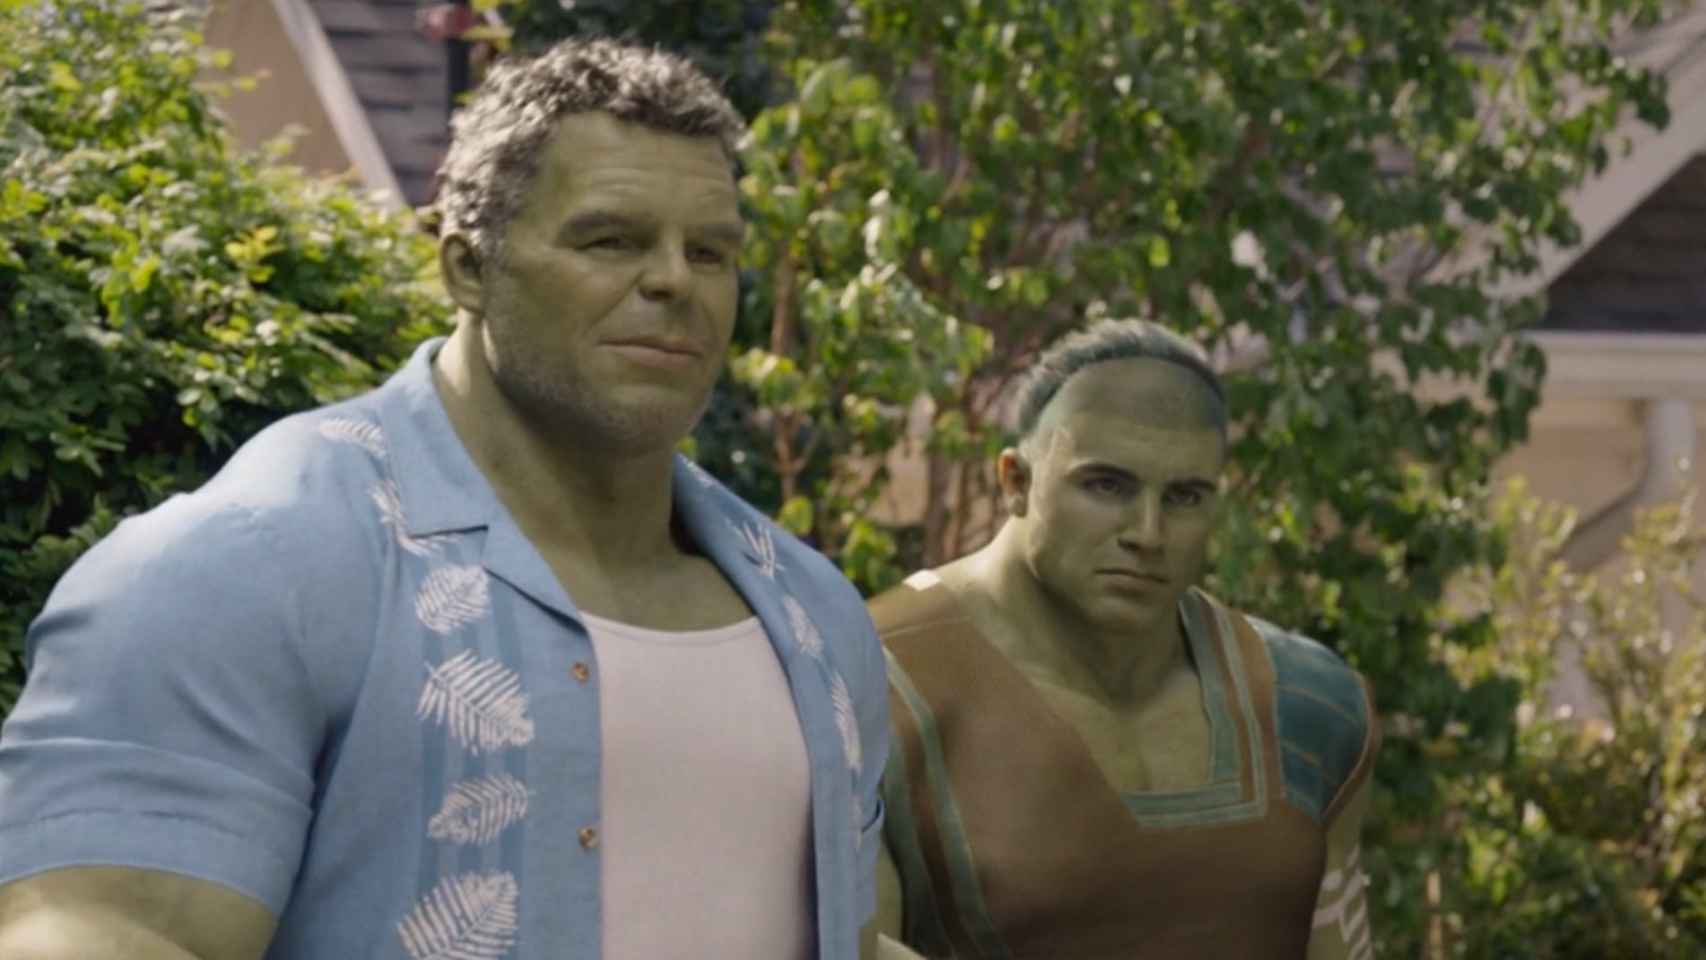 Crítica: 'She-Hulk', ¿Quién es el villano? ¿Y tú me lo preguntas? El  villano eres tú